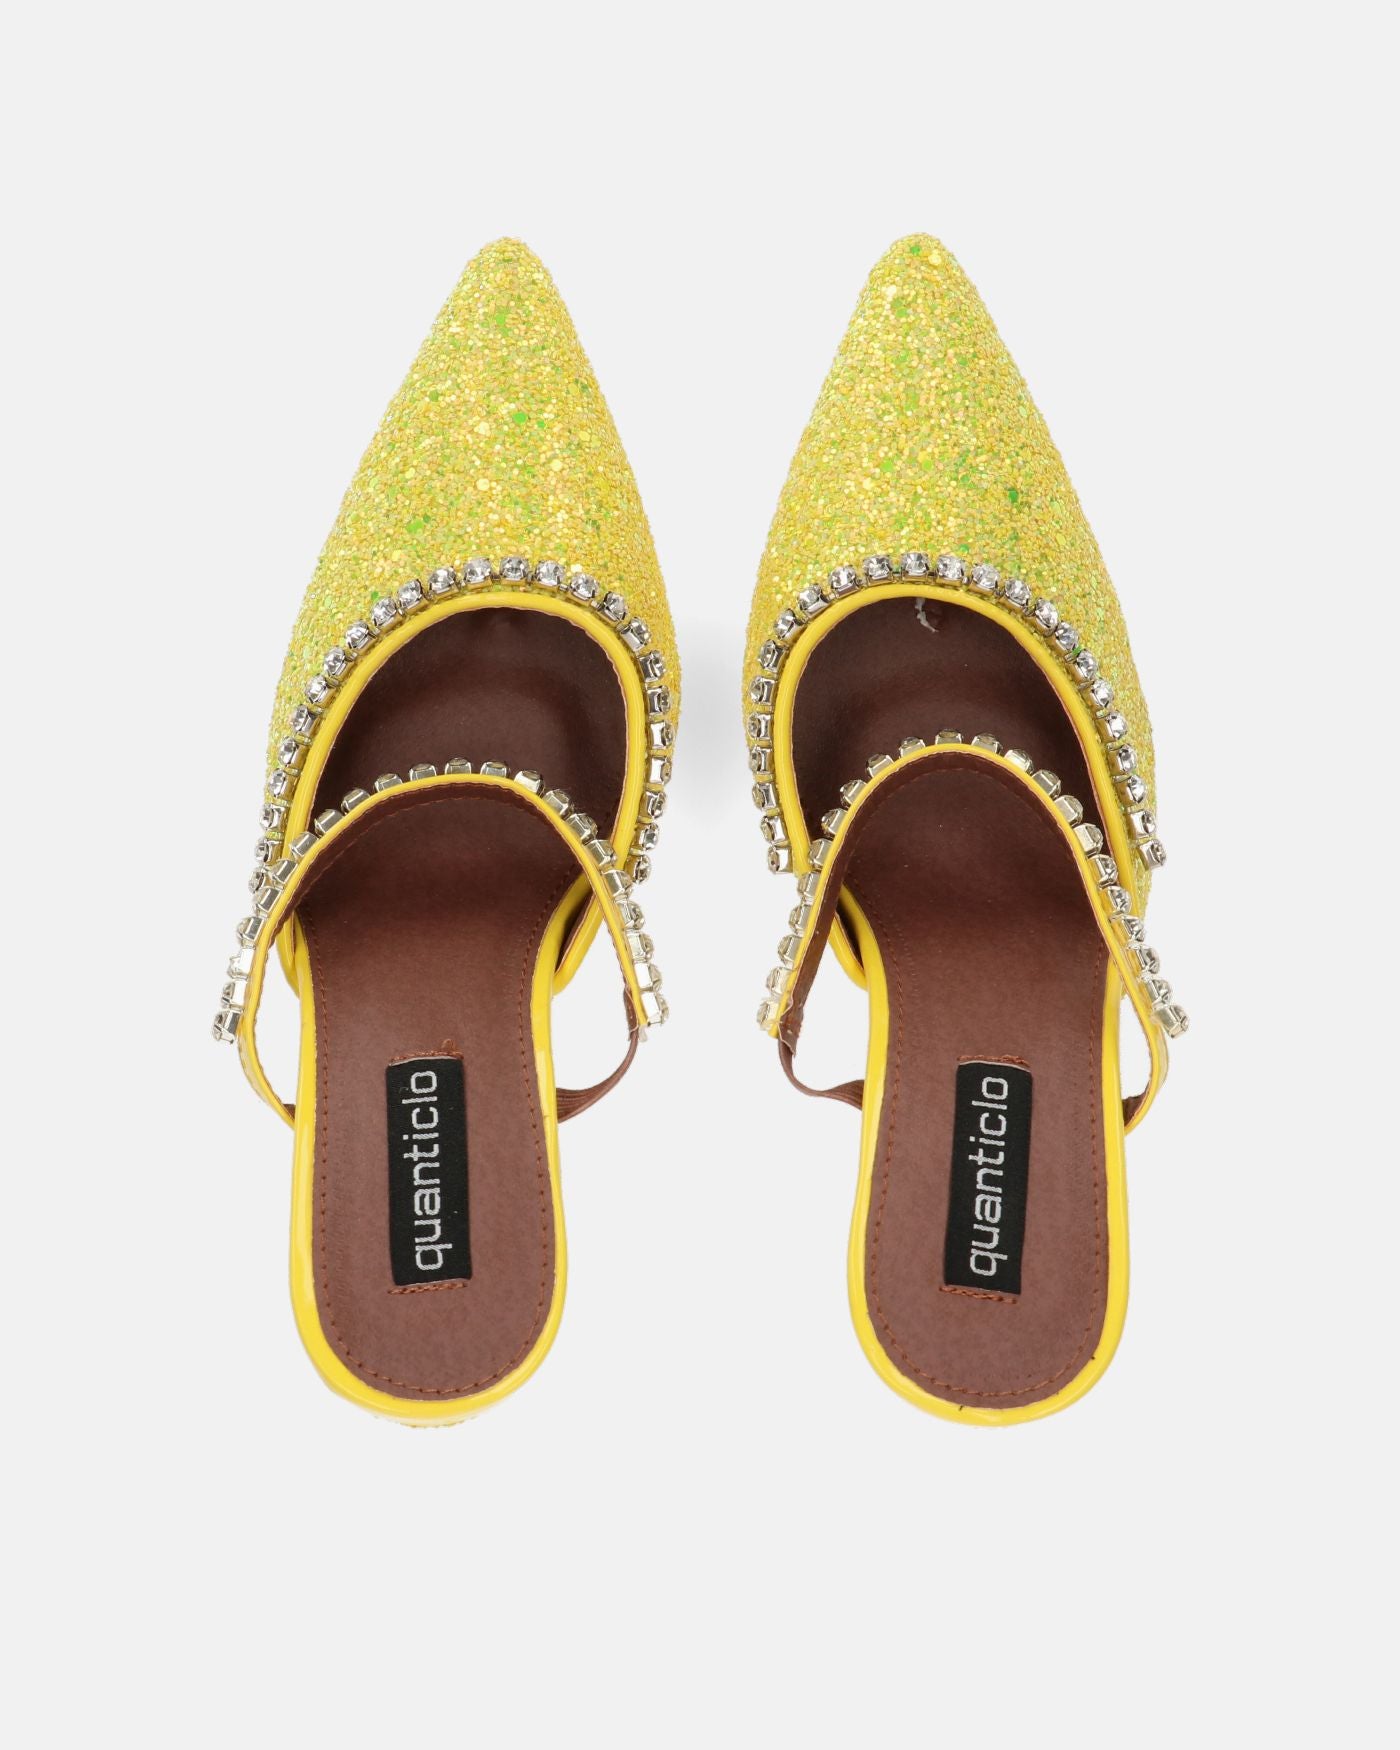 PERAL - scarpa con tacco in glitter giallo con gemme